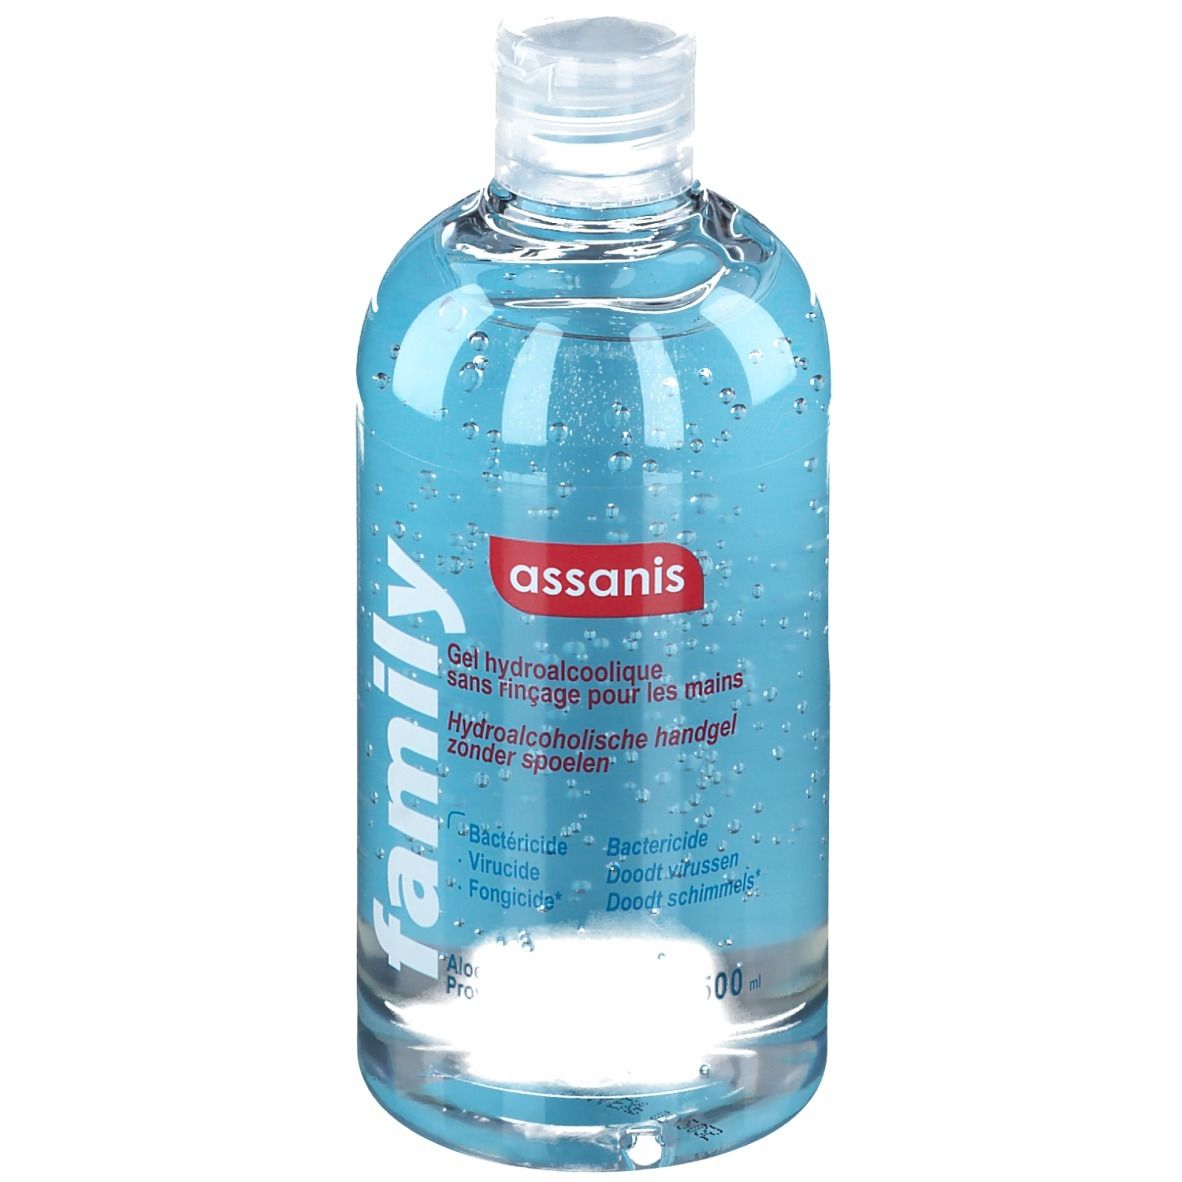 assanis Family Gel hydroalcoolique